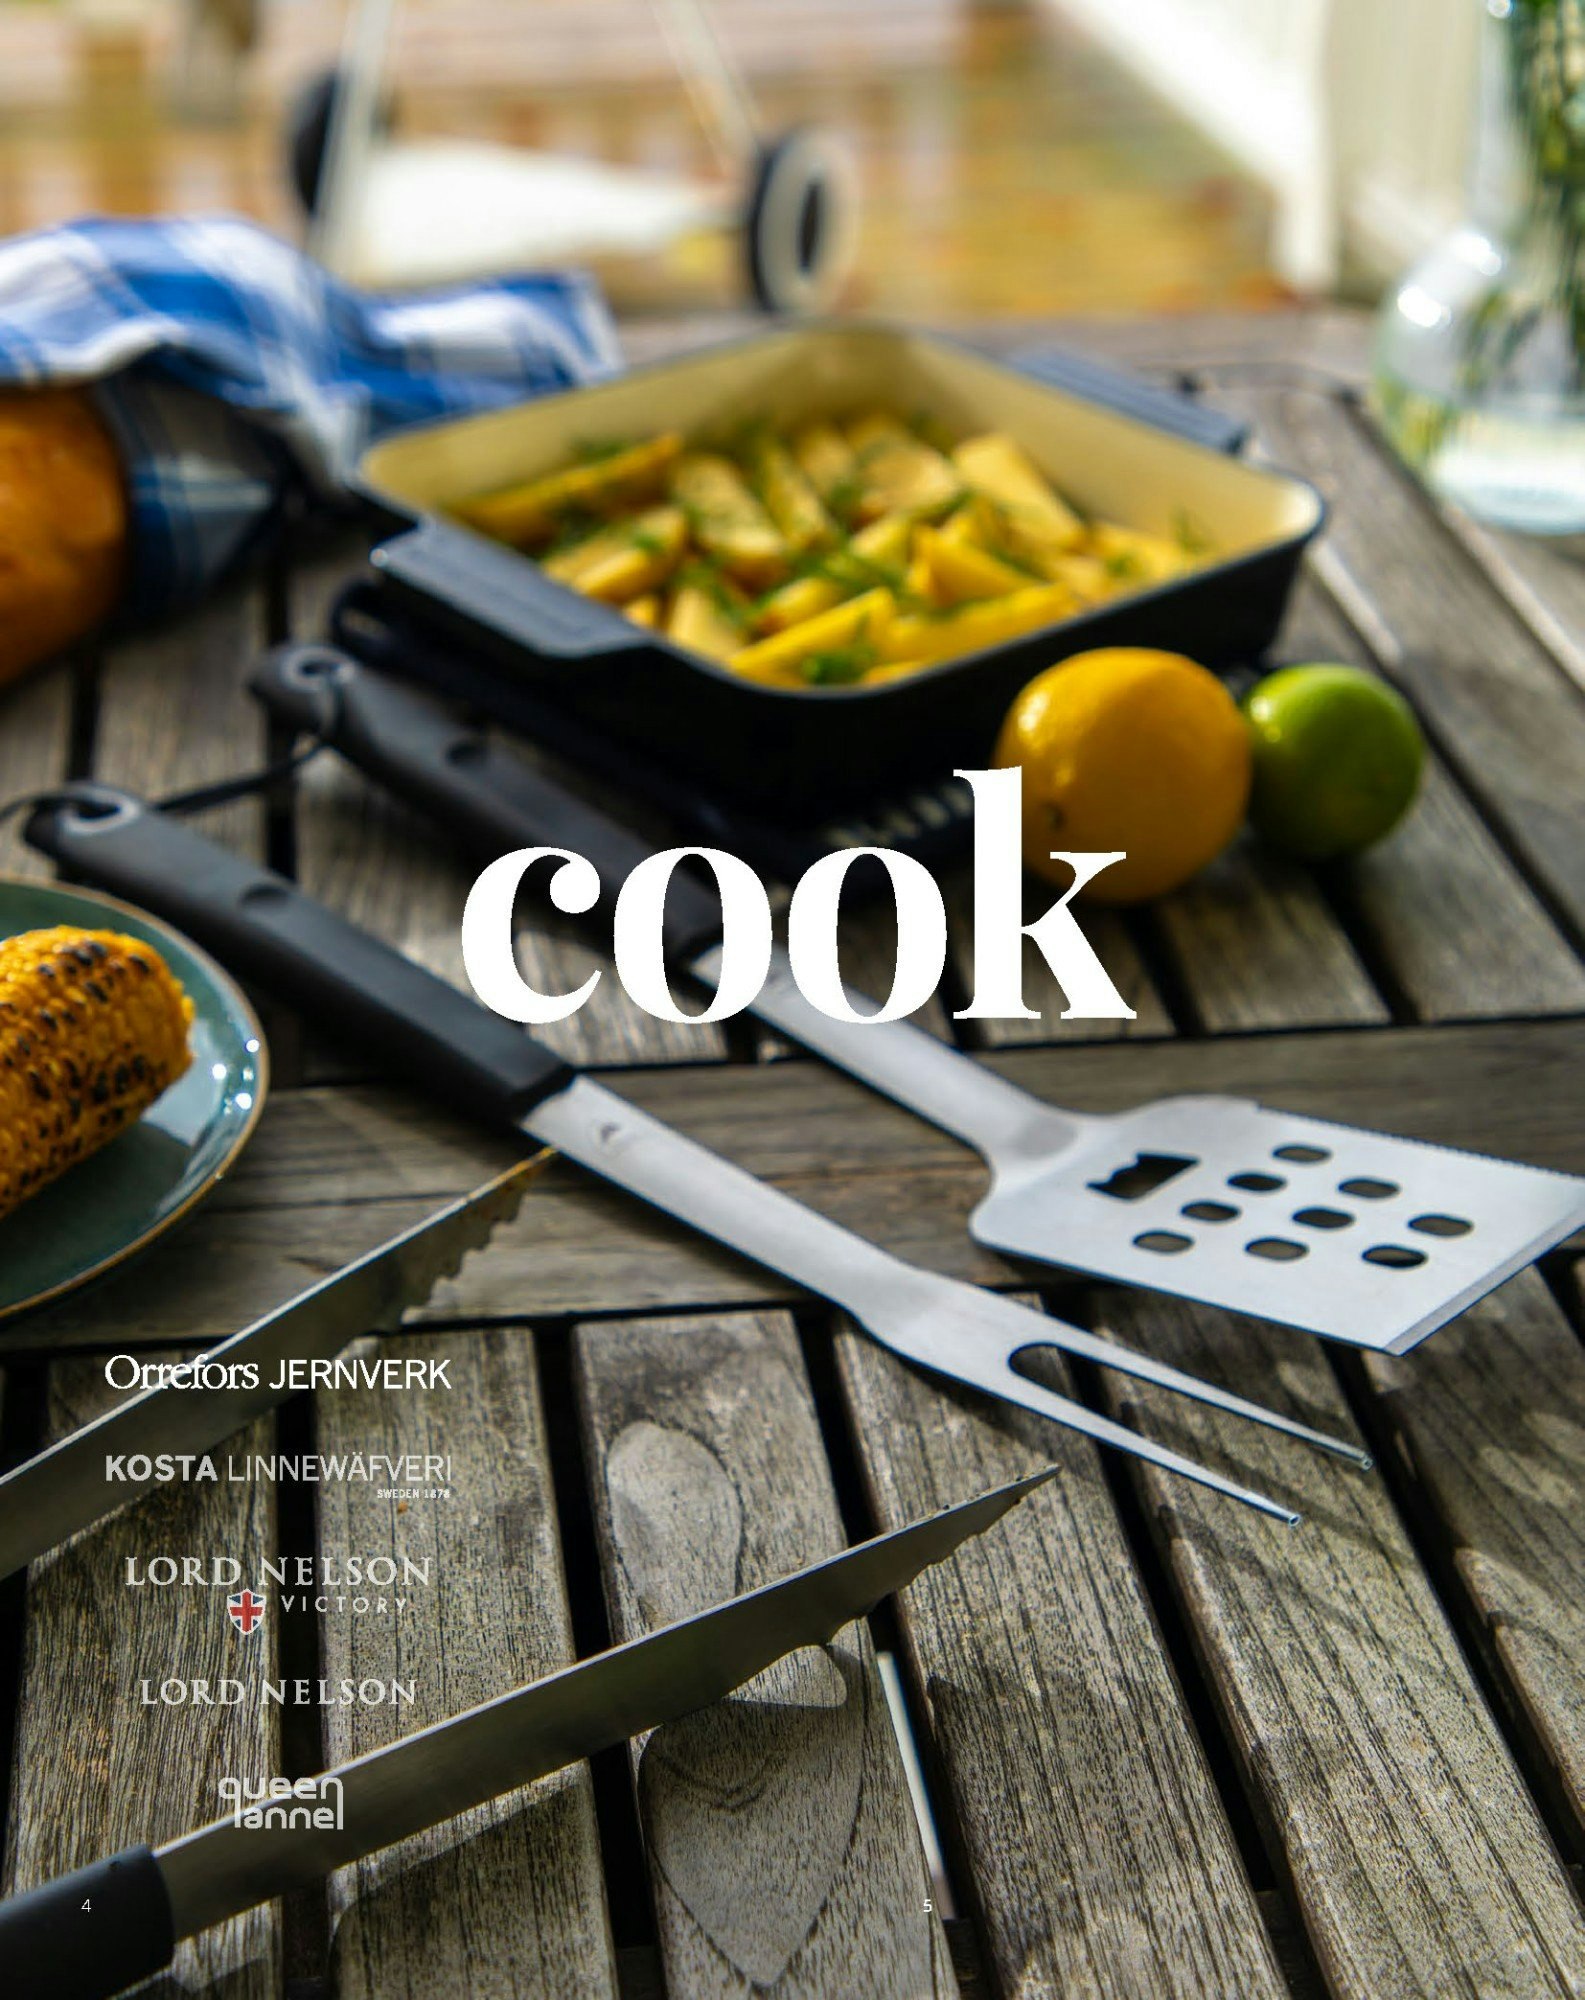 Cook - Grytor & stekpannor, ugnsformar, knivar & skärbrädor, köksredskap, kökslinne, dryckeskylare - Lindströms Reklam och Profil